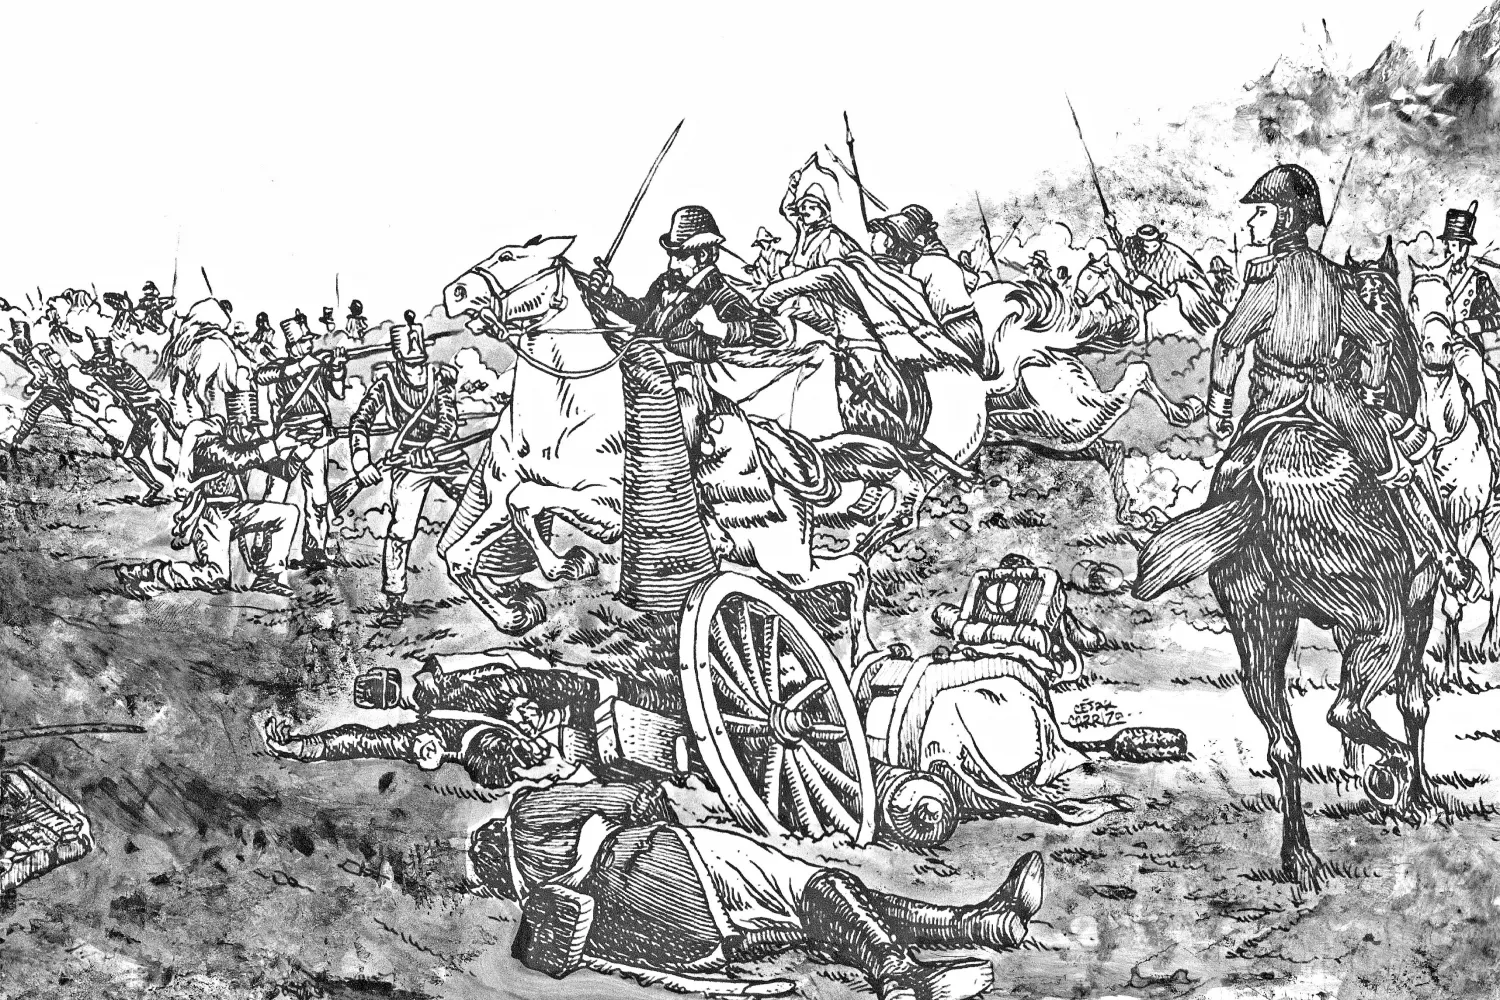 RECREACIÓN. Las ilustraciones de la Batalla de Tucumán son de César Carrizo, miembro del Equipo de Historia, Identidad y Cultura de la DAT-2021 